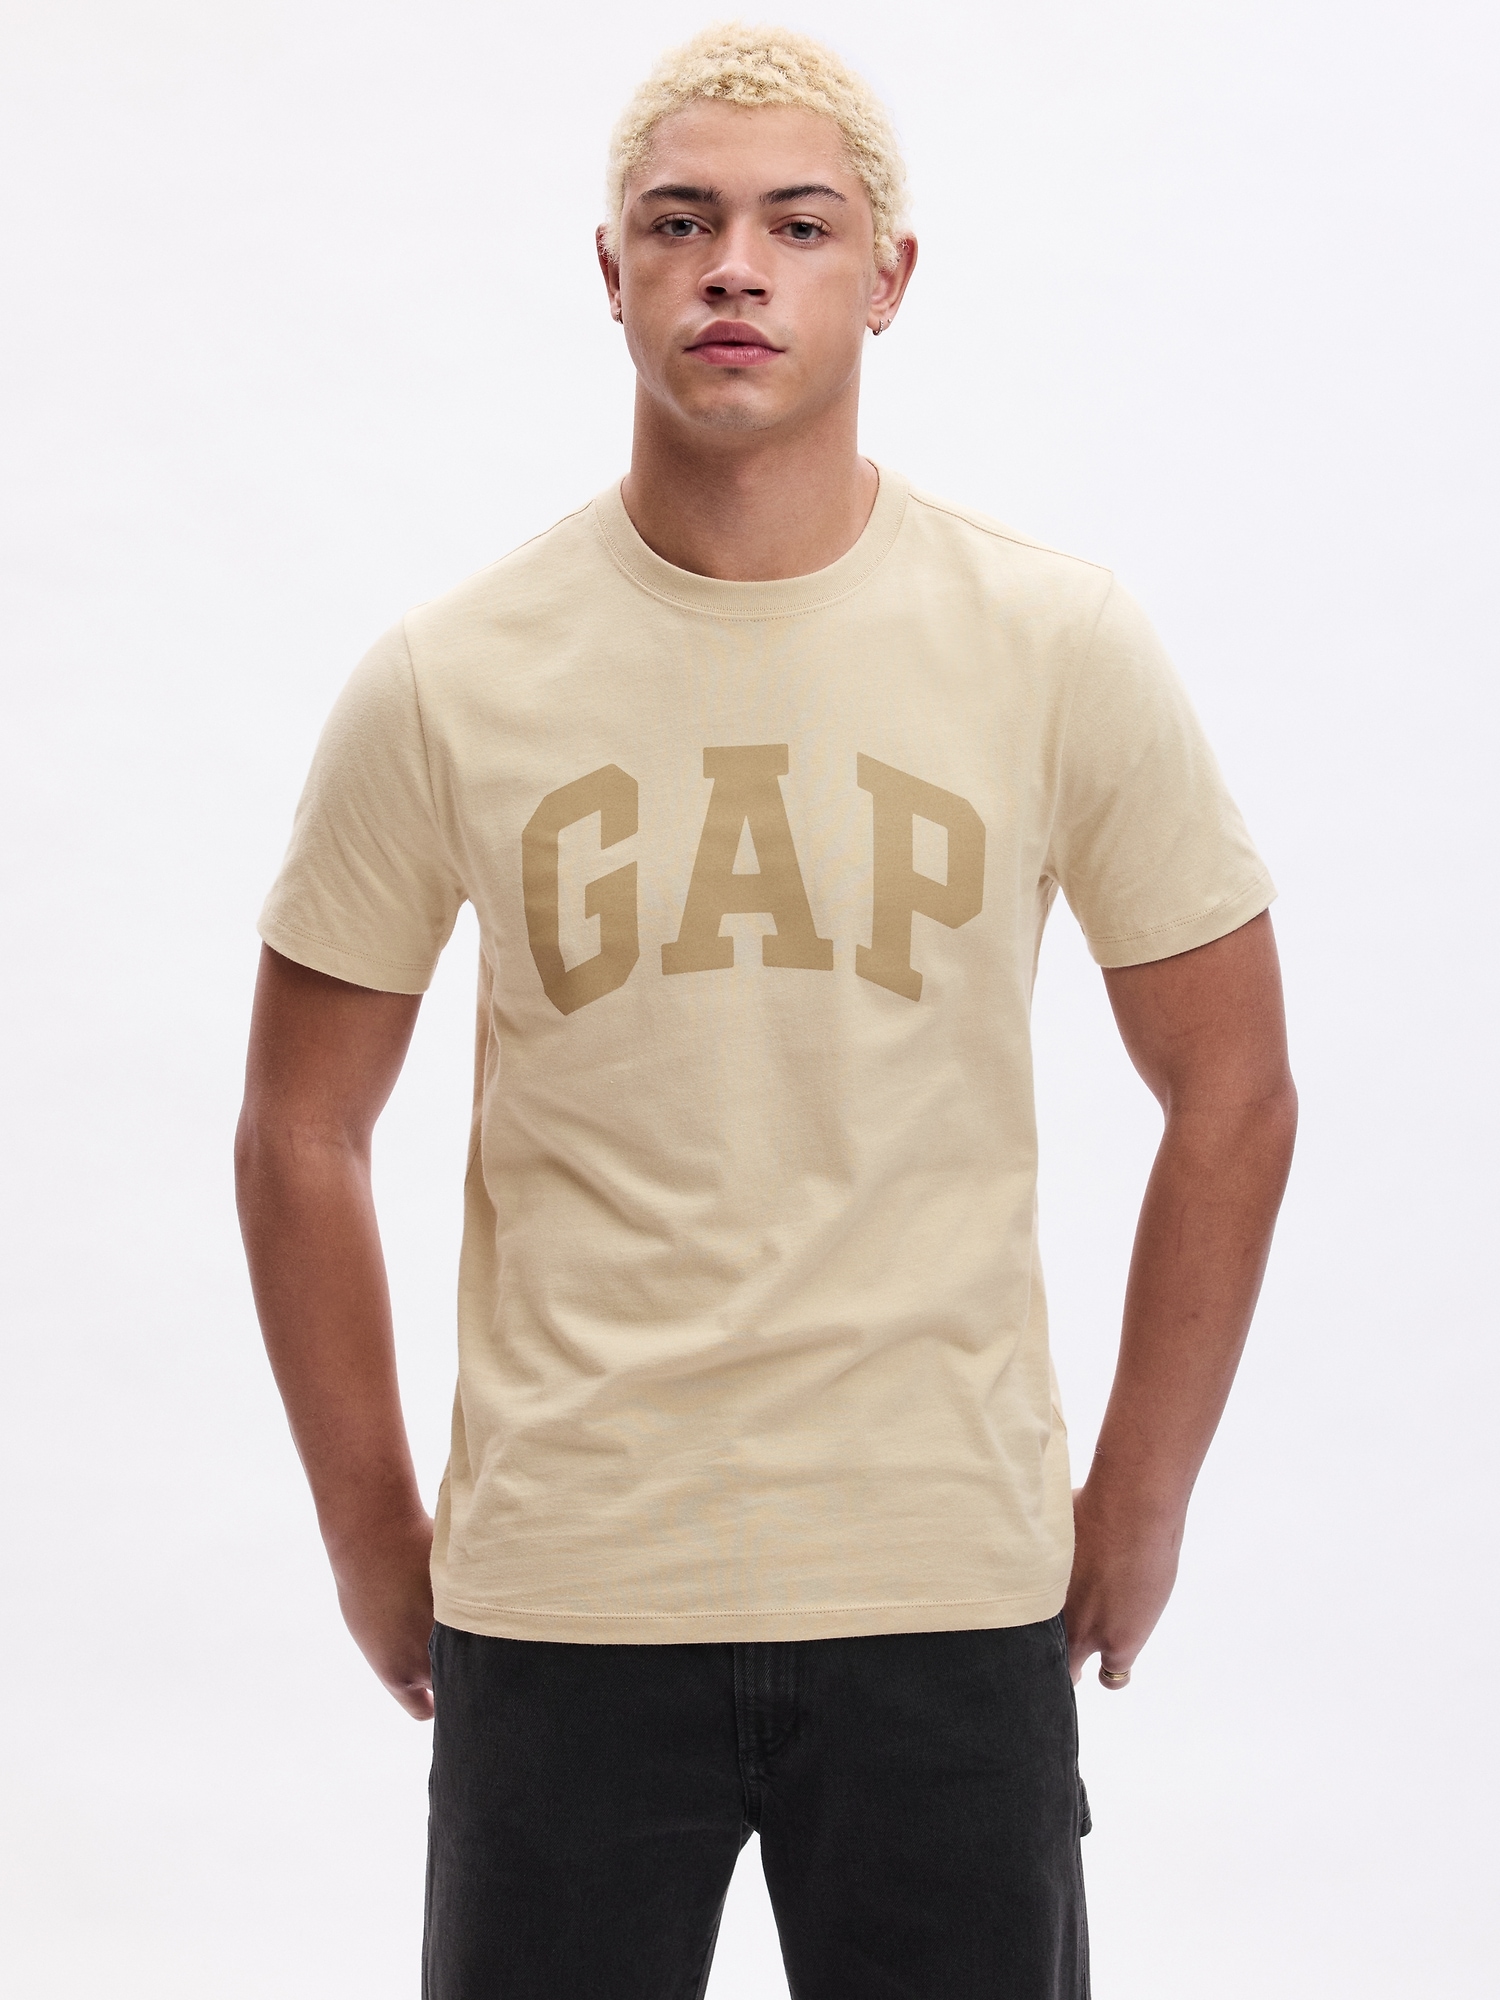 Gap Logo T-Shirt